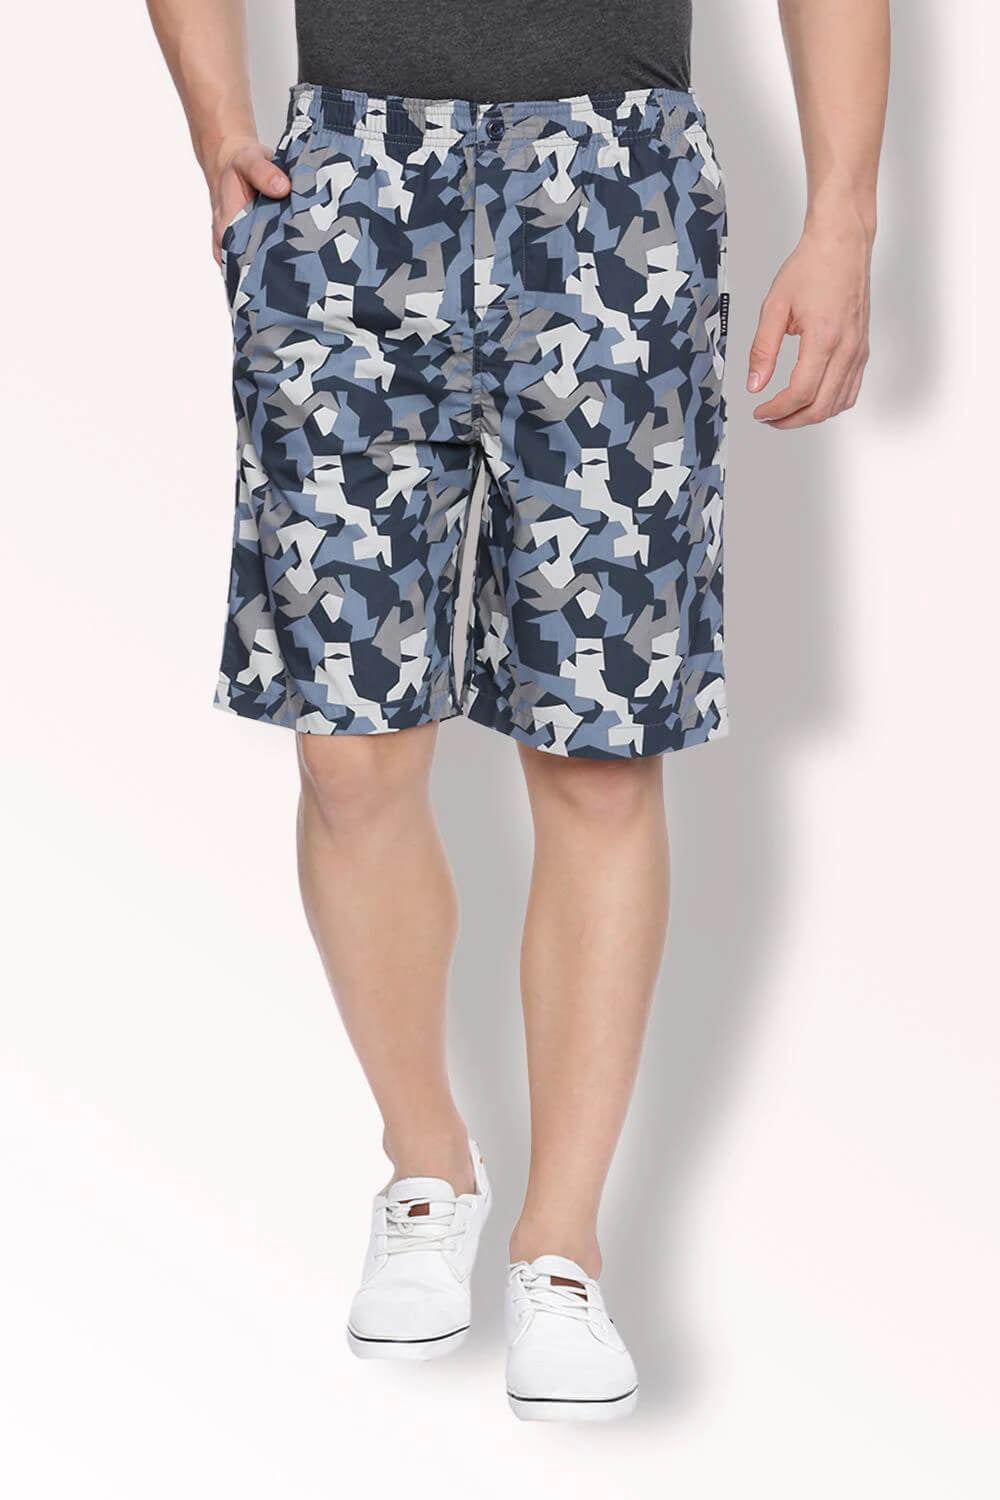 Van Heusen Blue-White Print Shorts for Men #50061